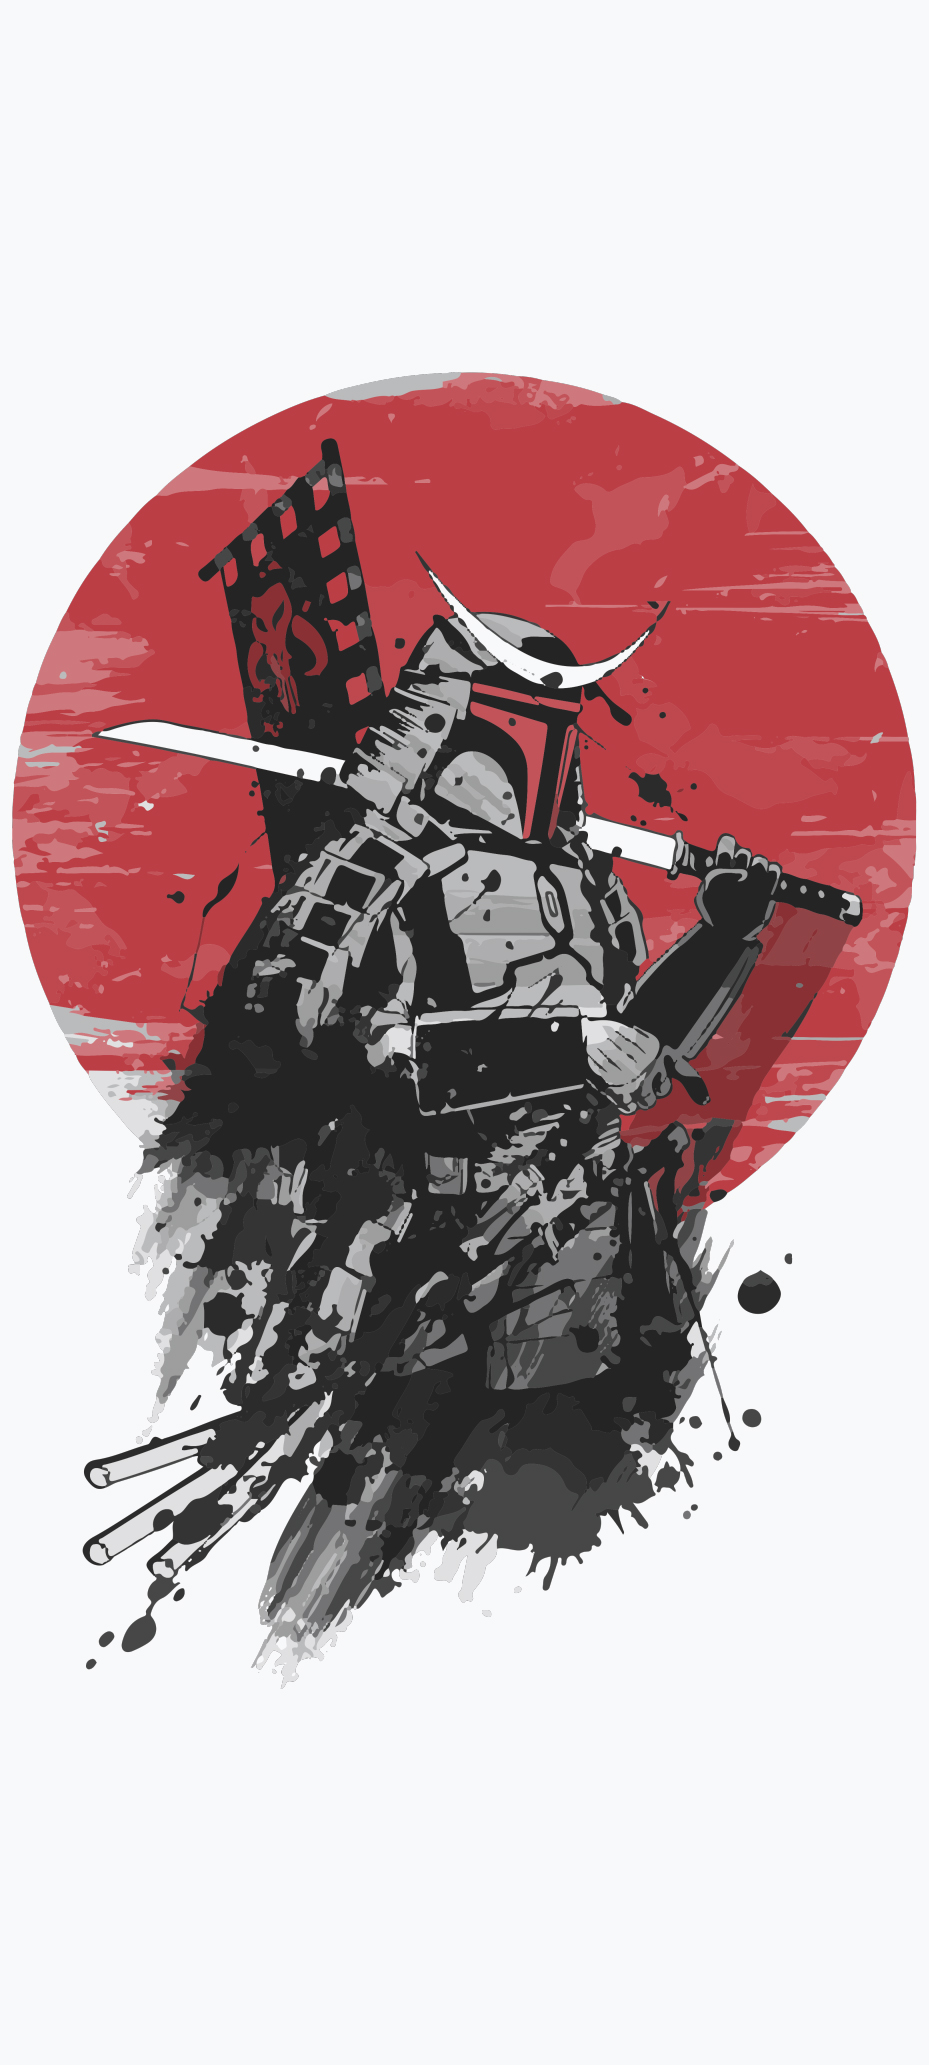 Samurai red wallpaper by skillsk  Download on ZEDGE  432b